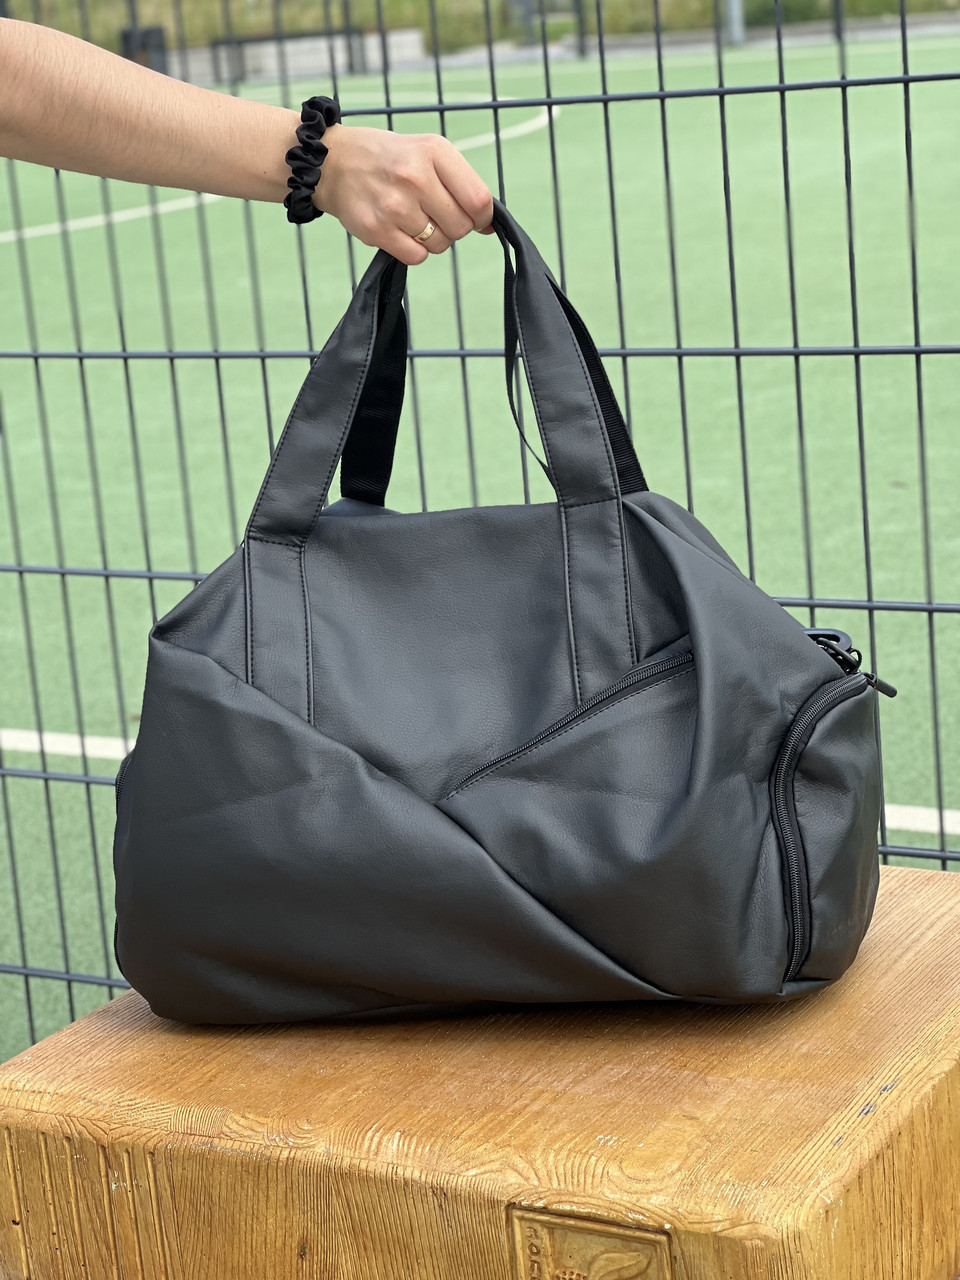 Жіноча чорна спортивна сумка на 30L з відділом для взуття